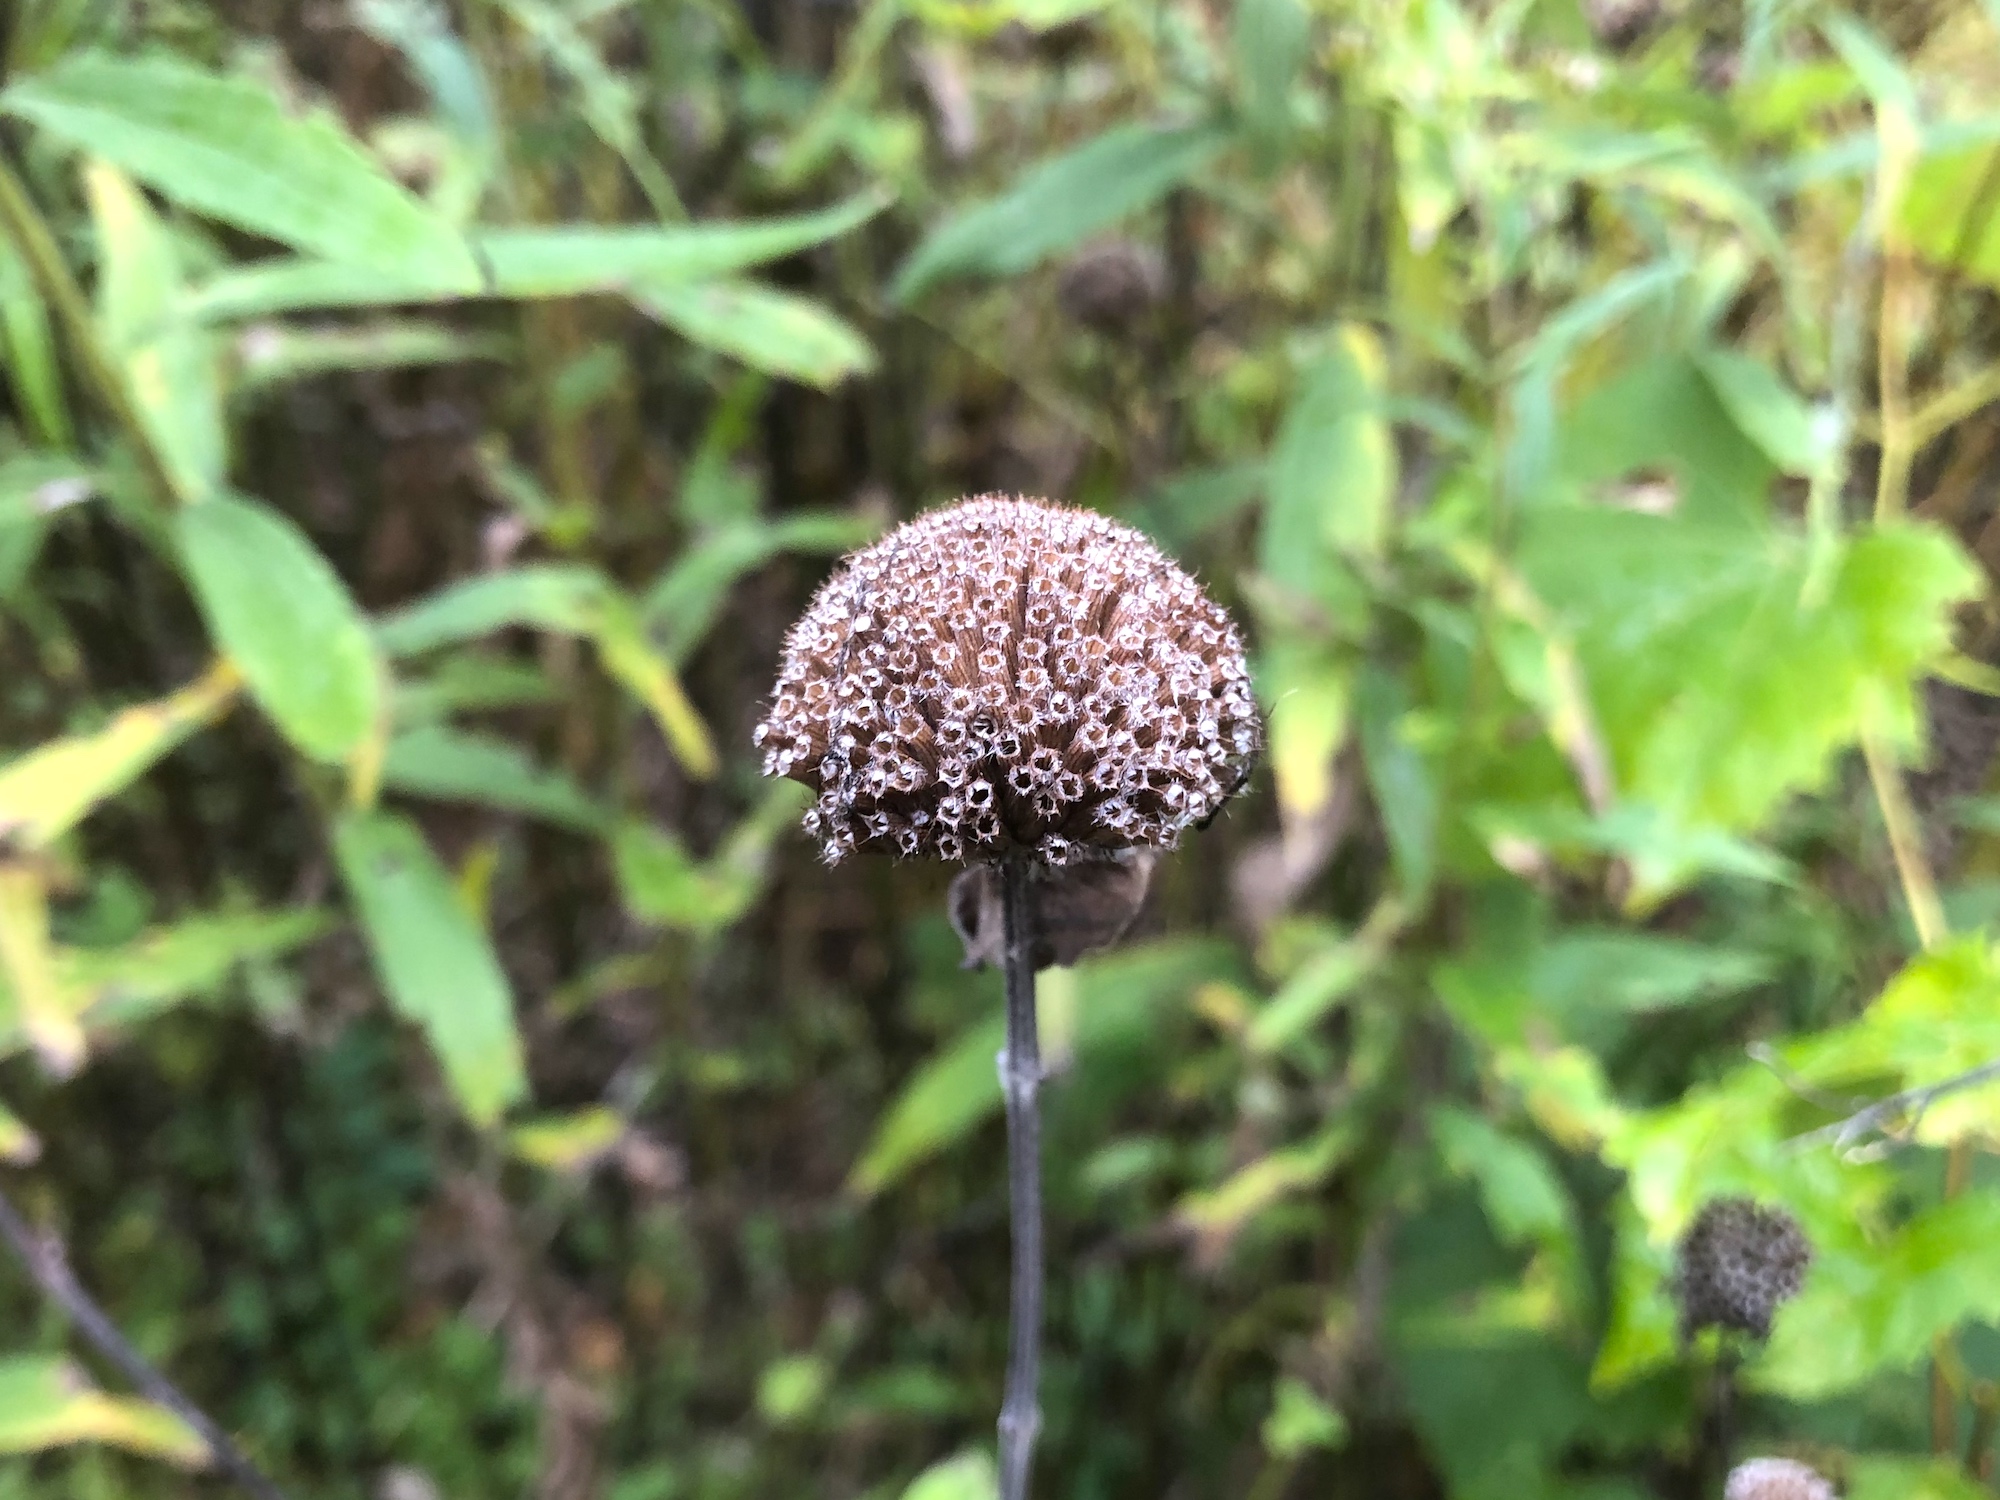 Bergamot seed pods along the banks of the retaining pond on September 27, 2019.